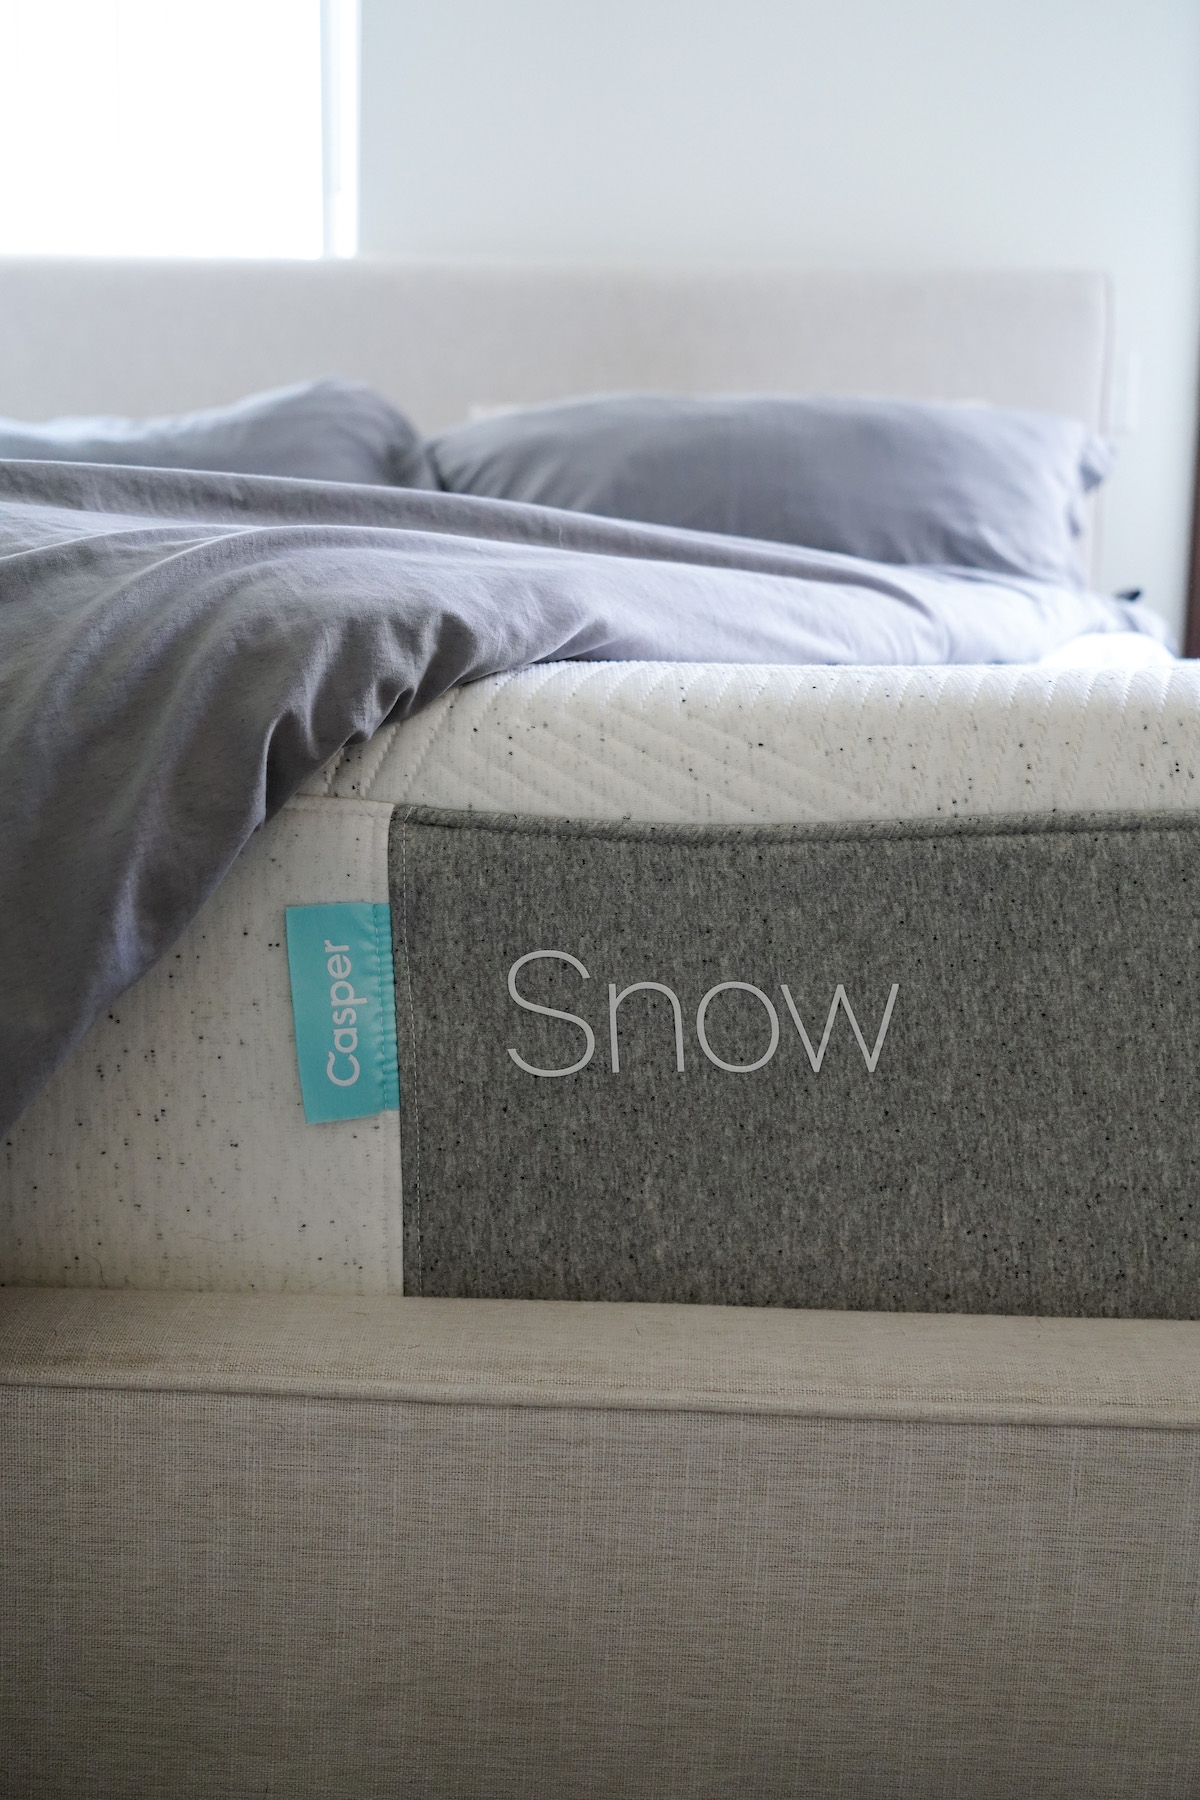 casper snow mattress review bed photo